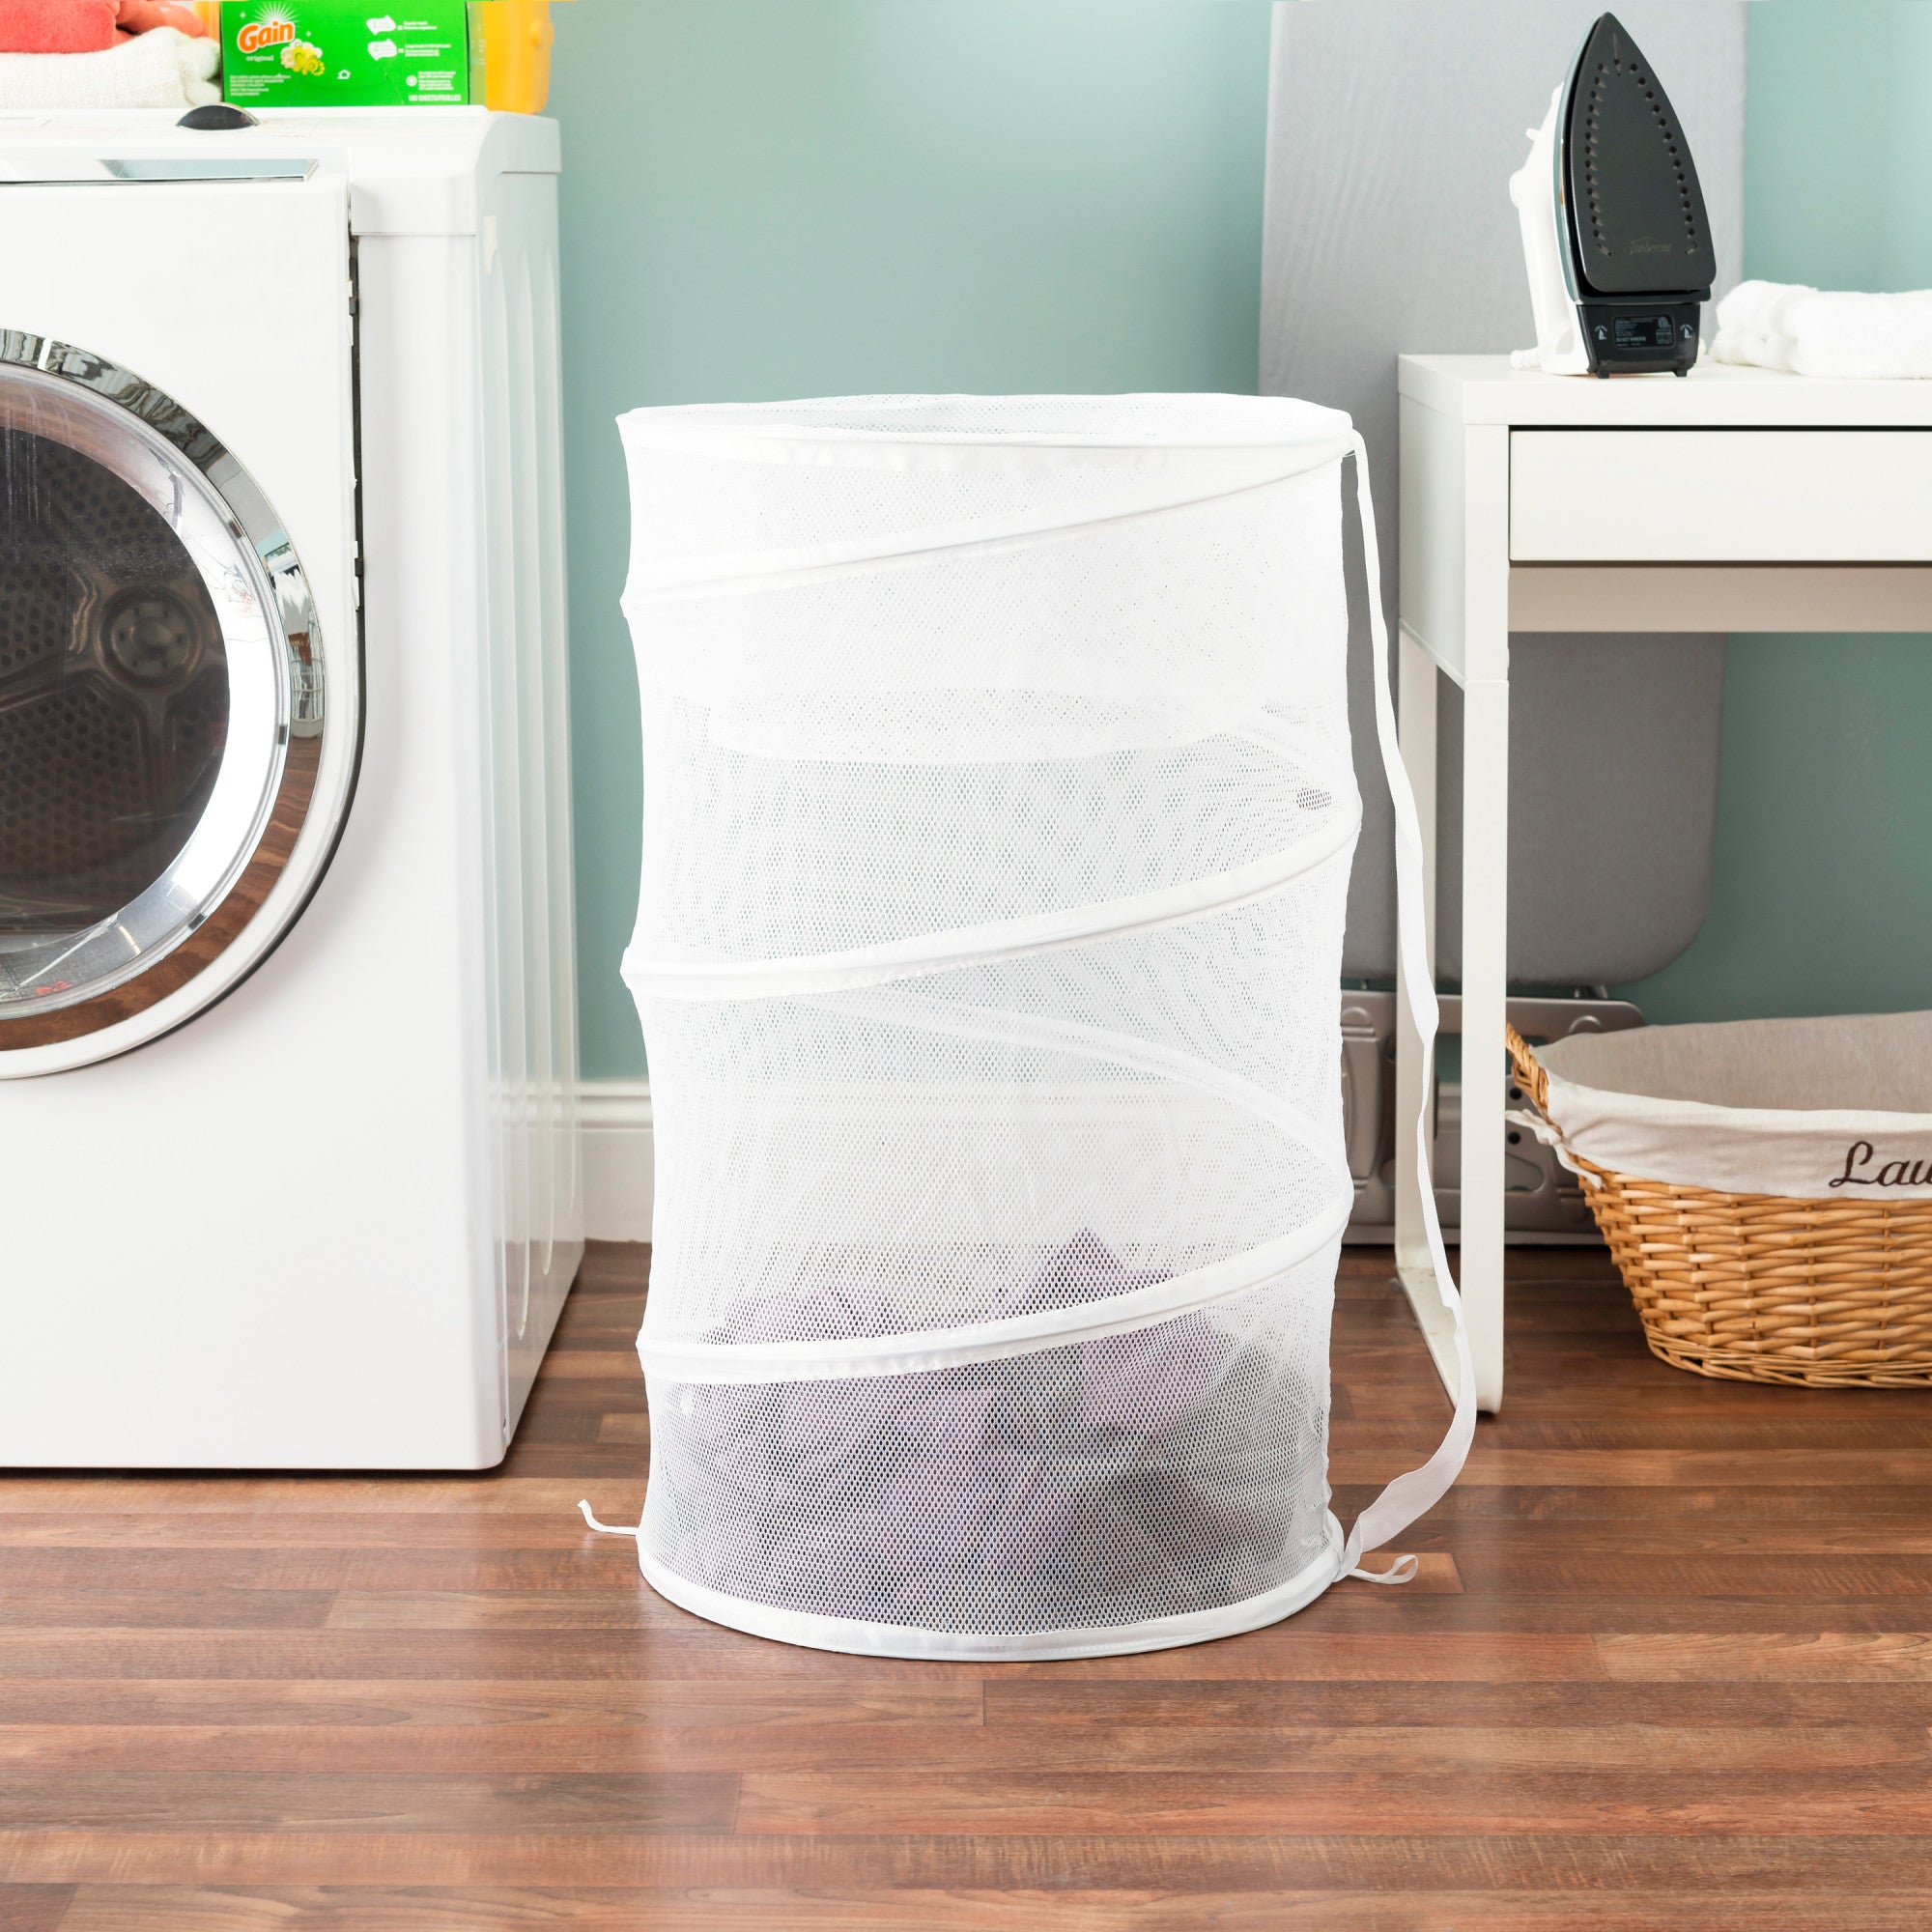 Home Basics Mesh Barrel Laundry Hamper - Assorted Colors